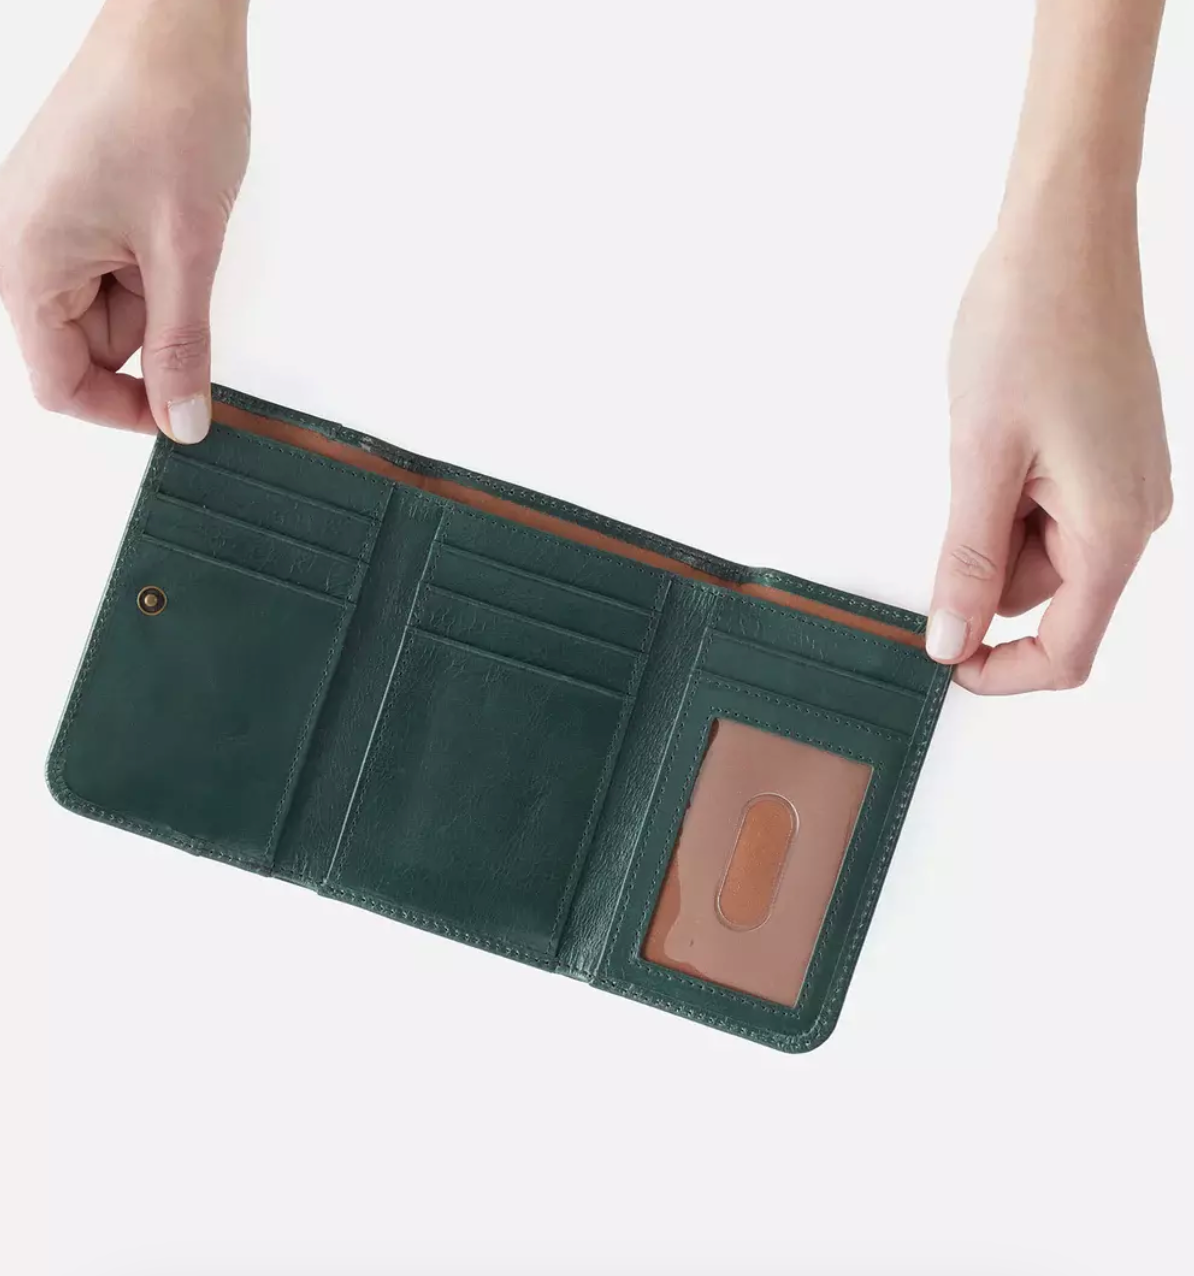 HOBO Jill Mini Trifold Wallet - gilt+gossamer